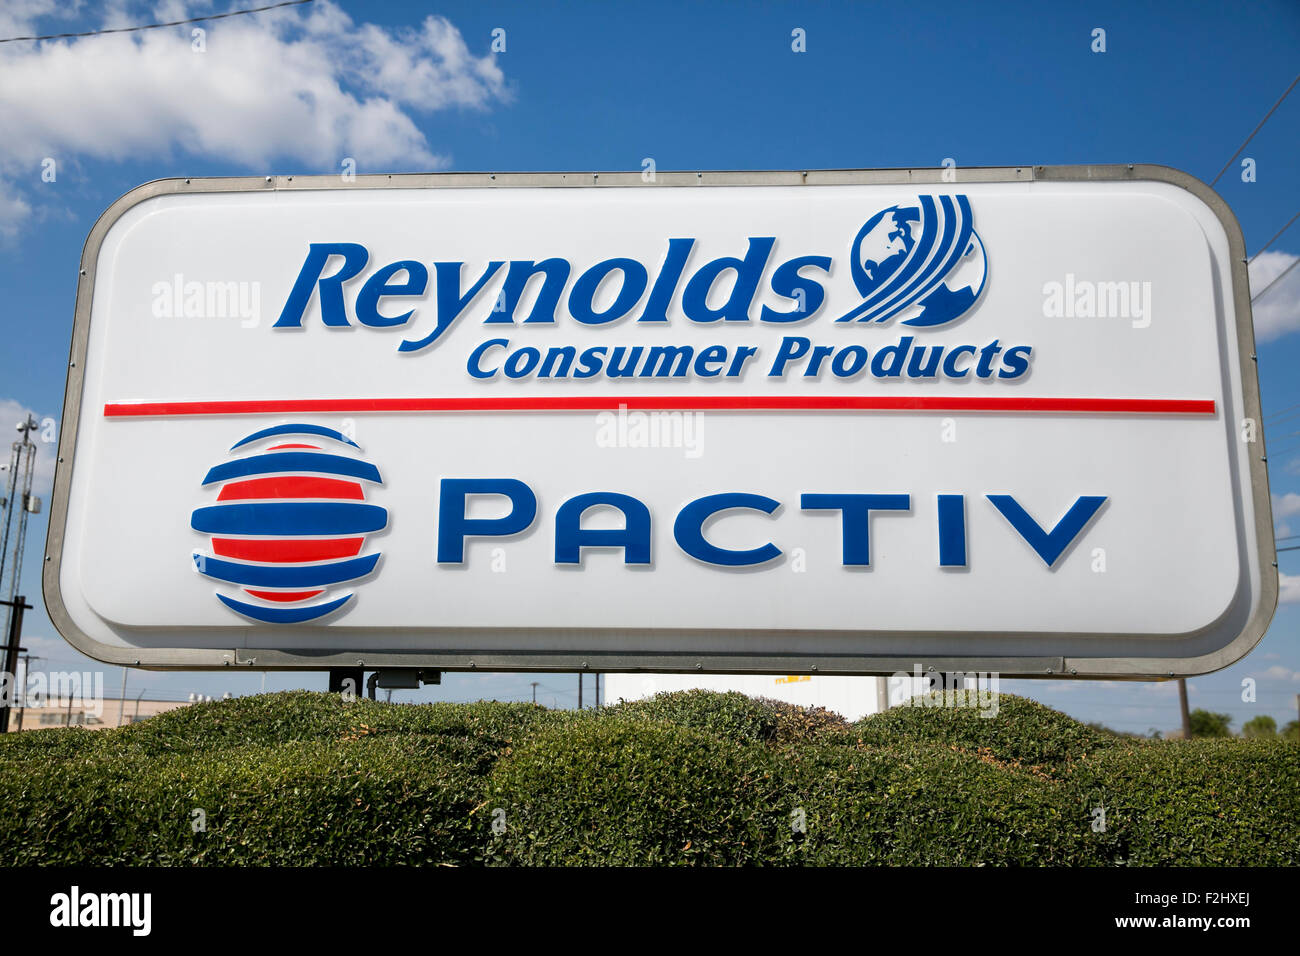 Un logotipo signo exterior de una fábrica operada por los productos de consumo de Reynolds y Pactiv en Temple, Texas el 8 de septiembre de 2015. Foto de stock